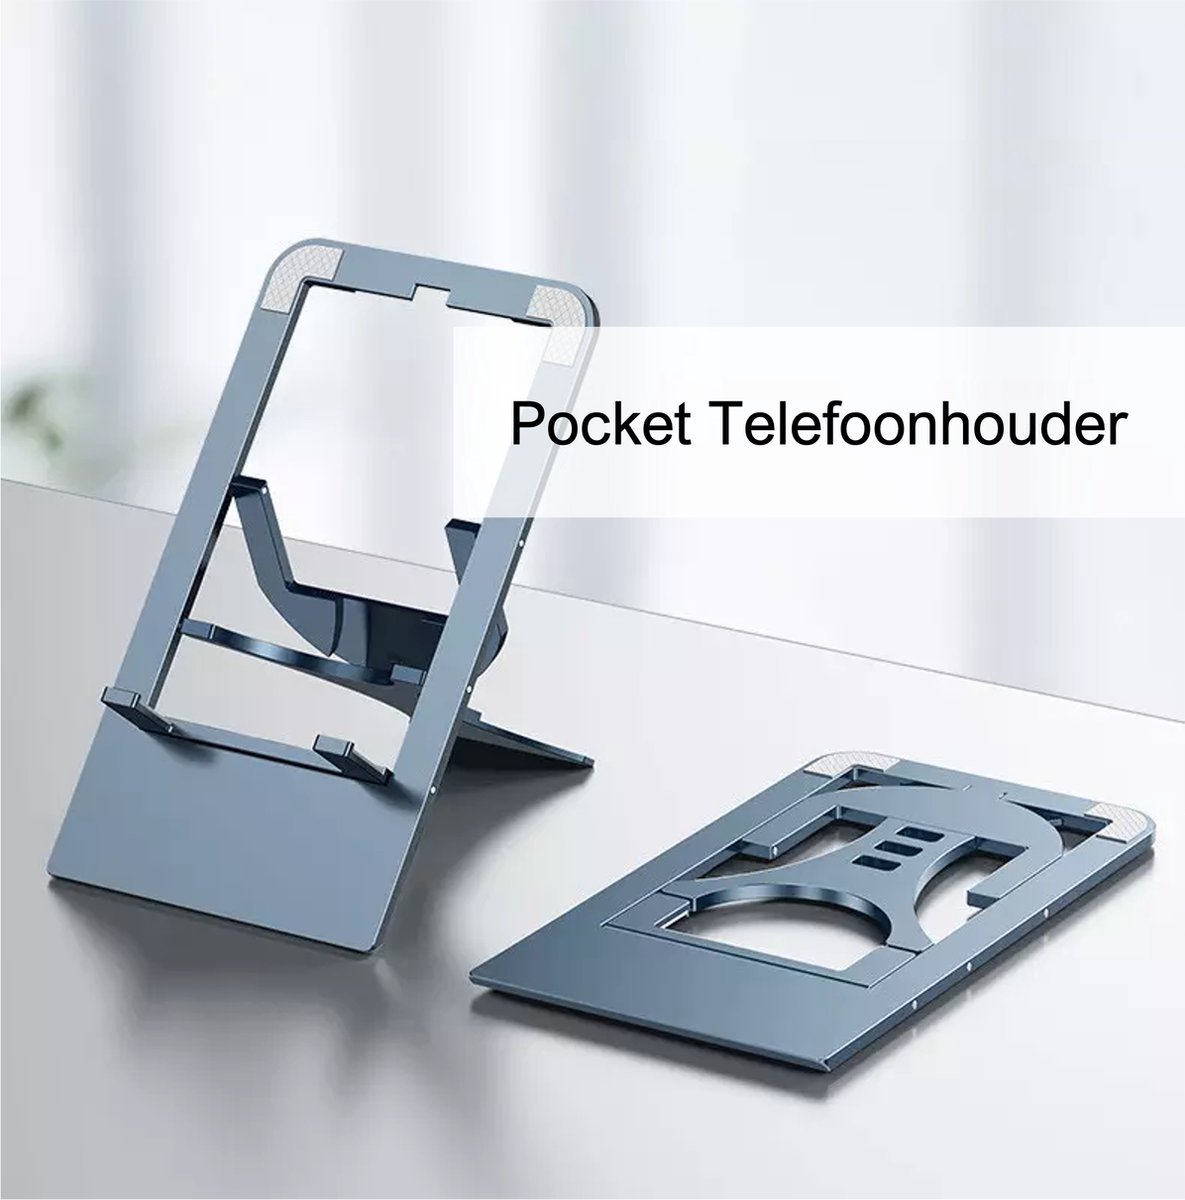 RAYBRO Pocket Telefoon houder - Opvouwbaar - Inklapbare Standaard voor Telefoon en/of Tablet voor op Tafel of Bureau - Donker grijs aluminium - Stabiel - super kwaliteit - Best Getest